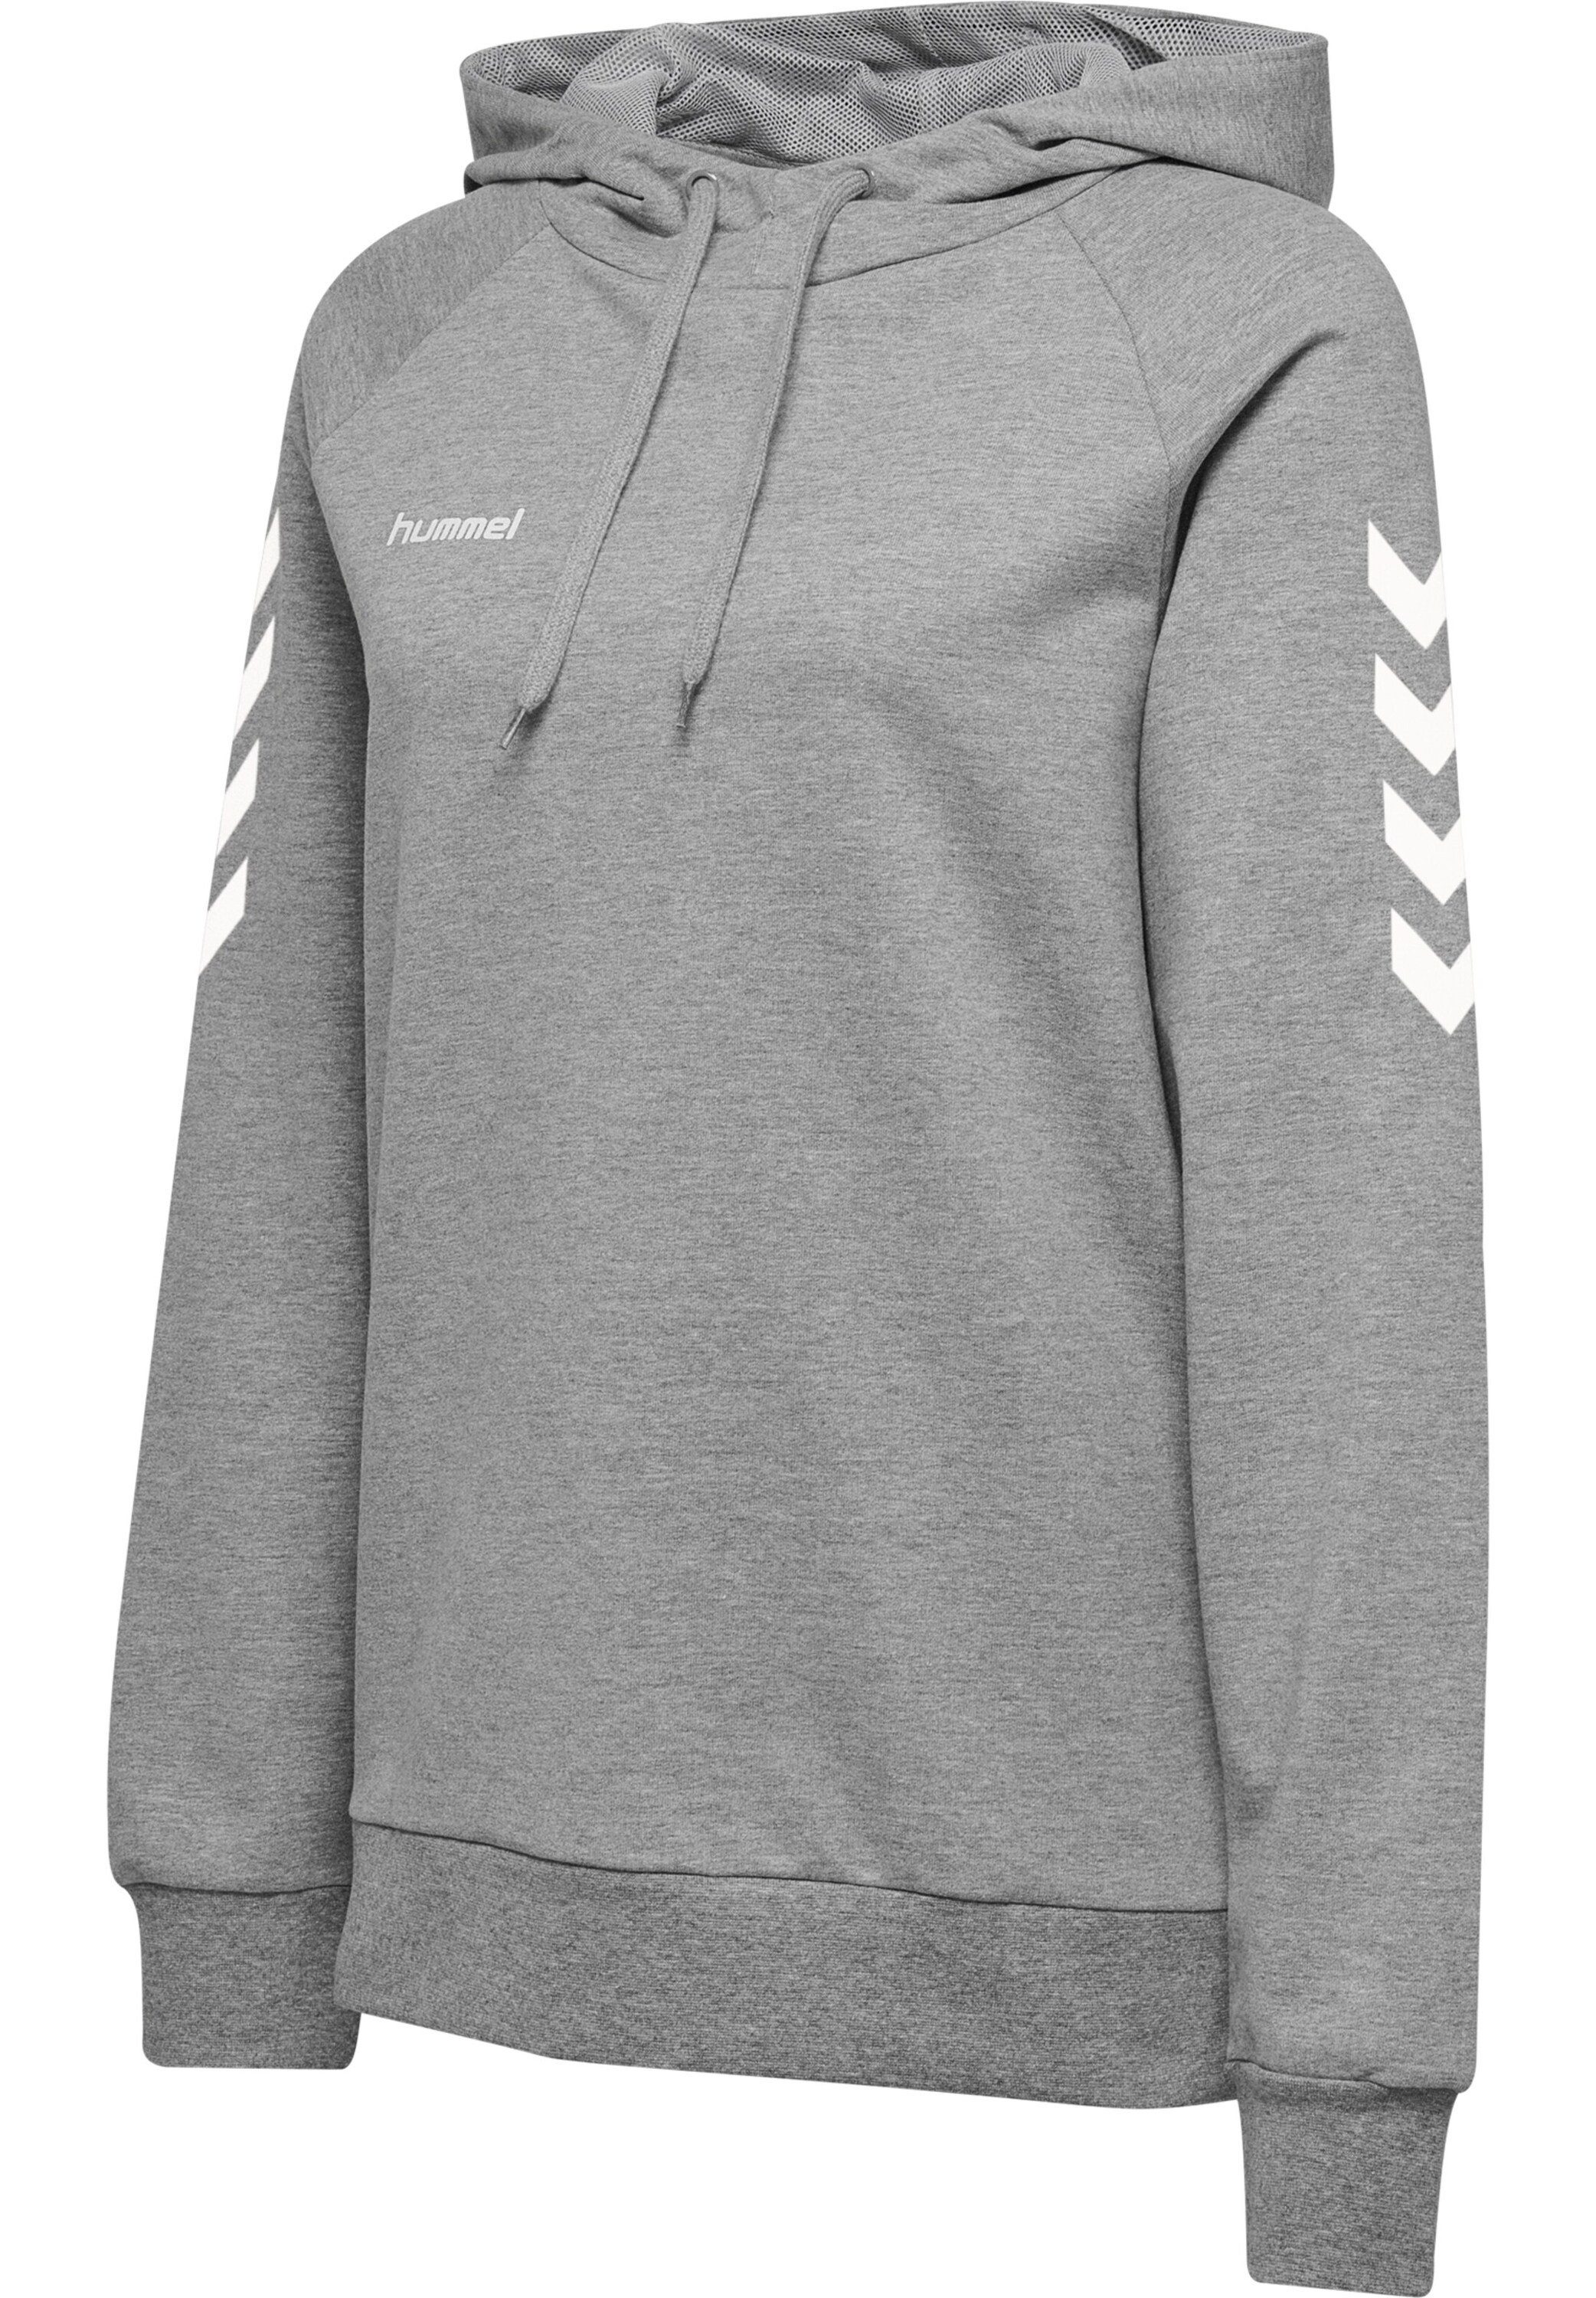 Sweatshirt Grau (1-tlg) Details Plain/ohne hummel